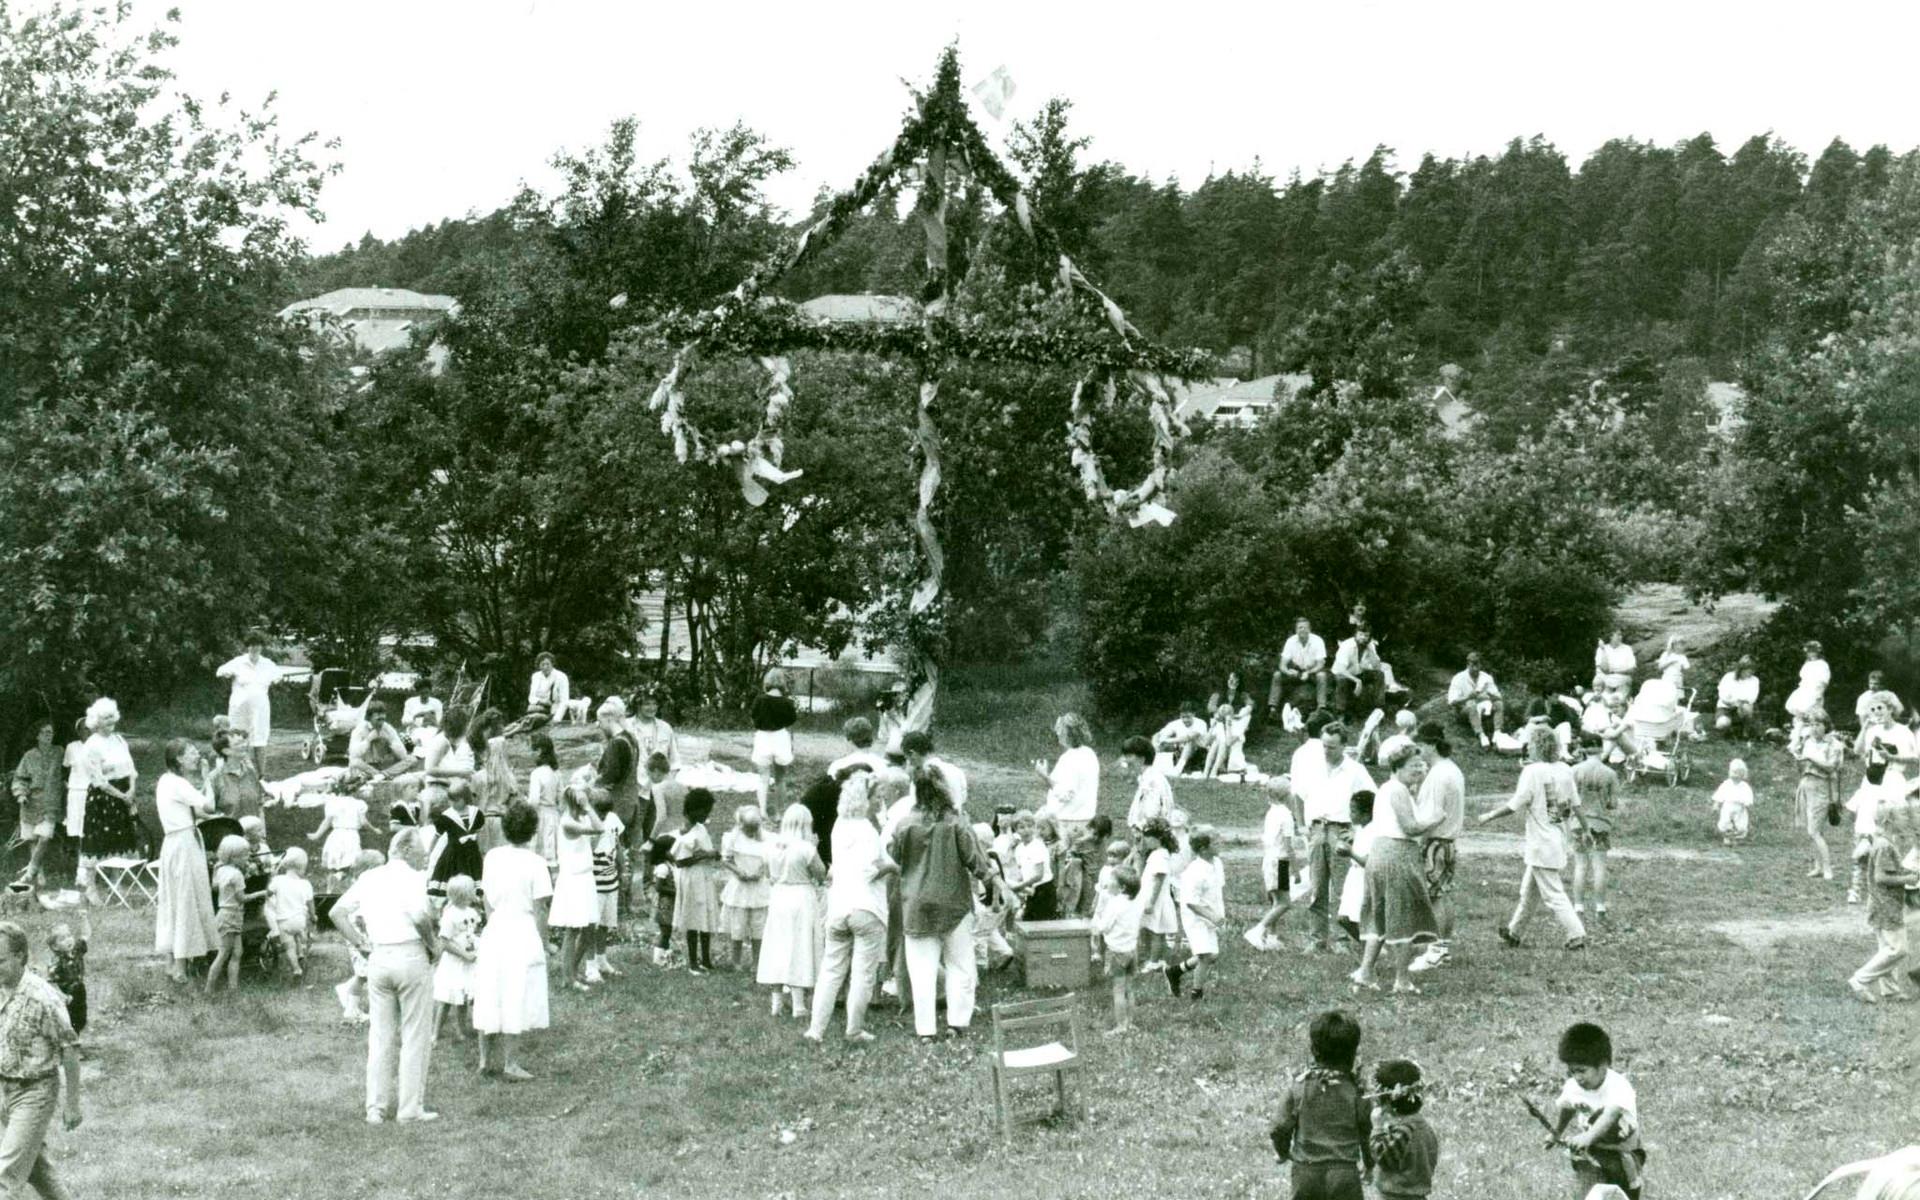 Samma firande som bilden innan. Firandet i Björndammen verkar ha varit populärt det där året.